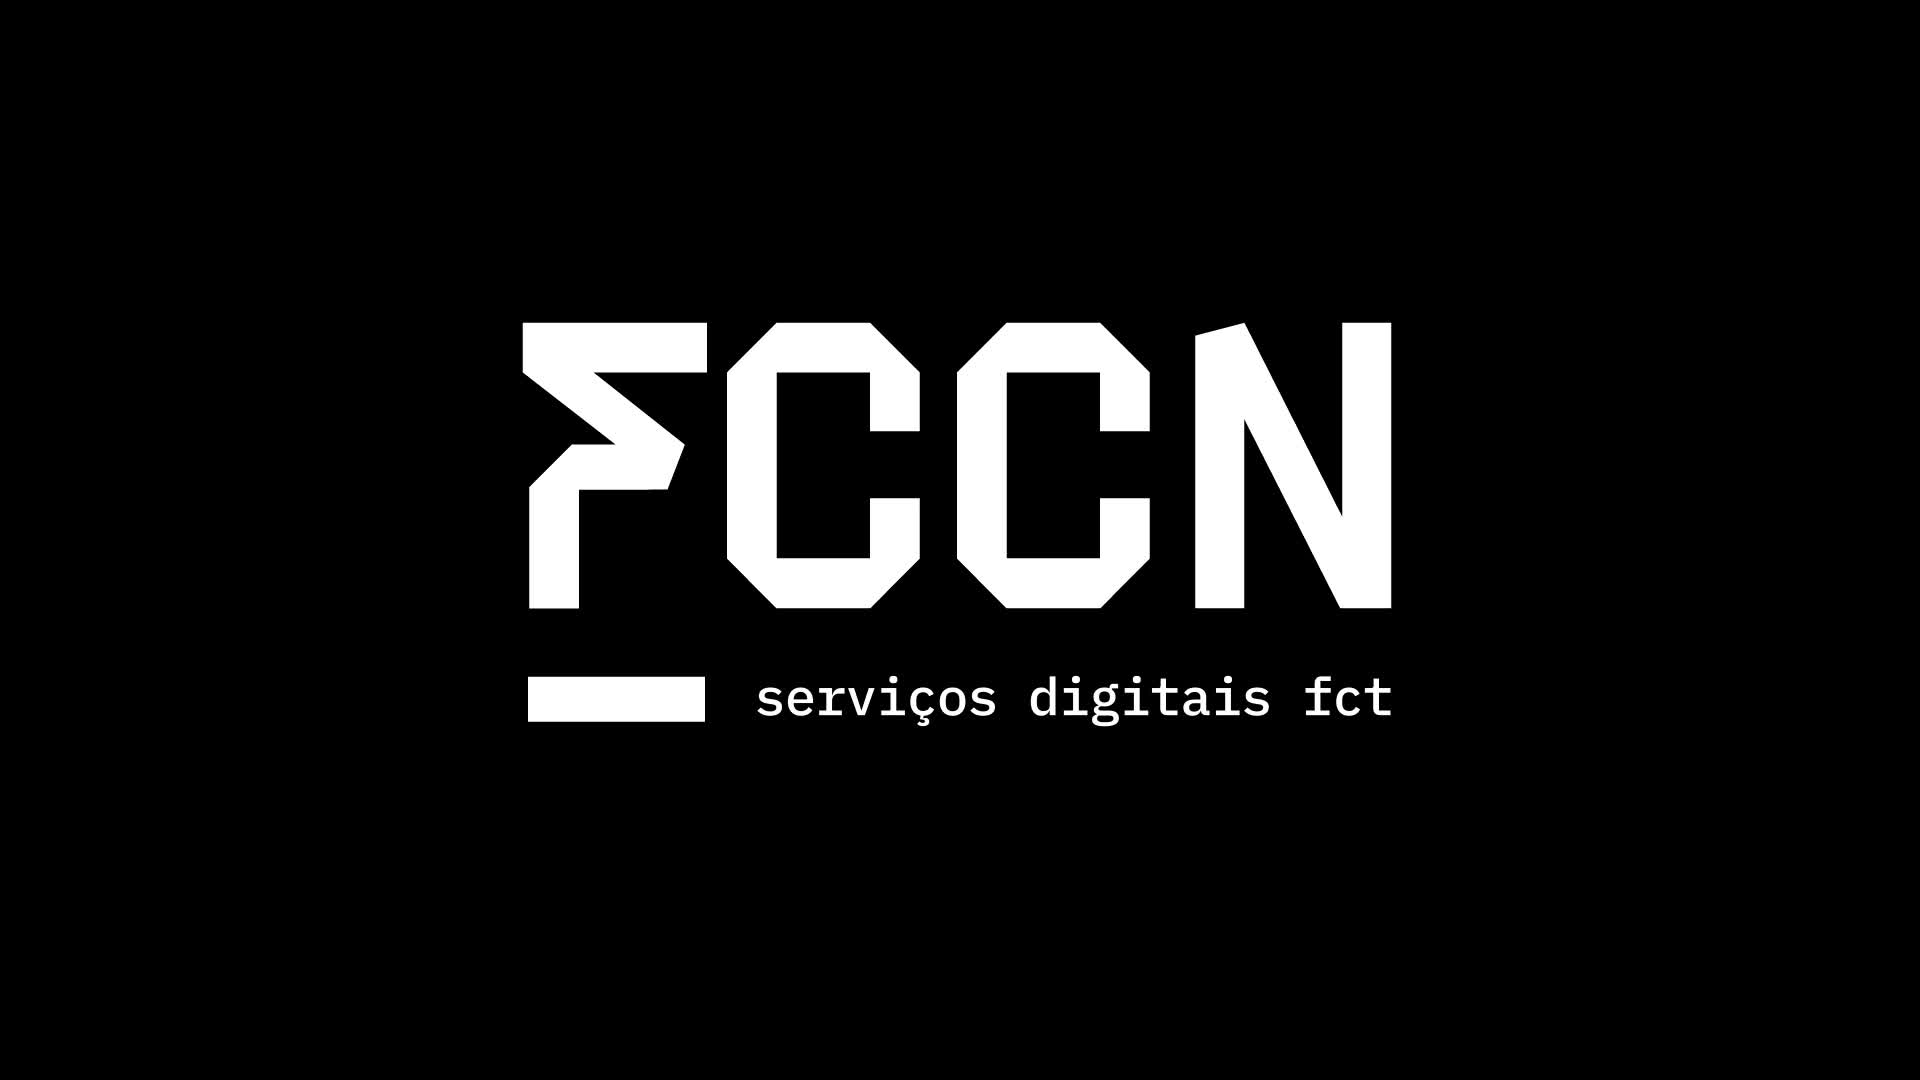  A nova imagem da FCCN